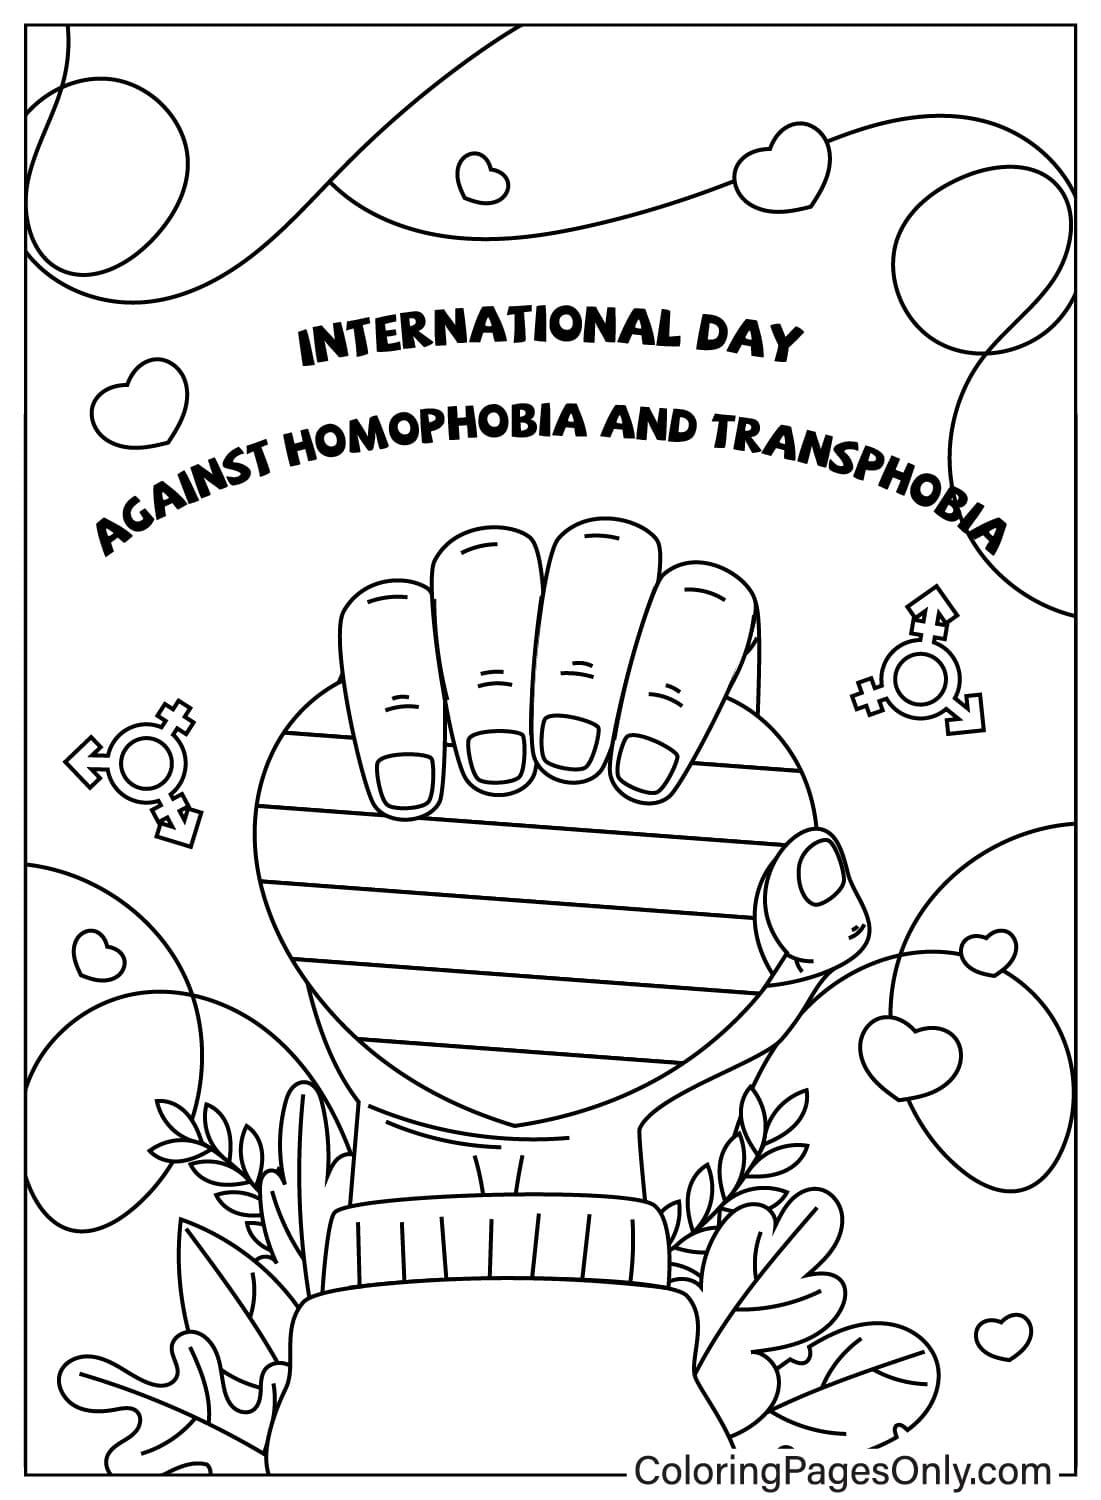 Dibujo para colorear del Día Internacional contra la Homofobia y la Transfobia de mayo de mayo